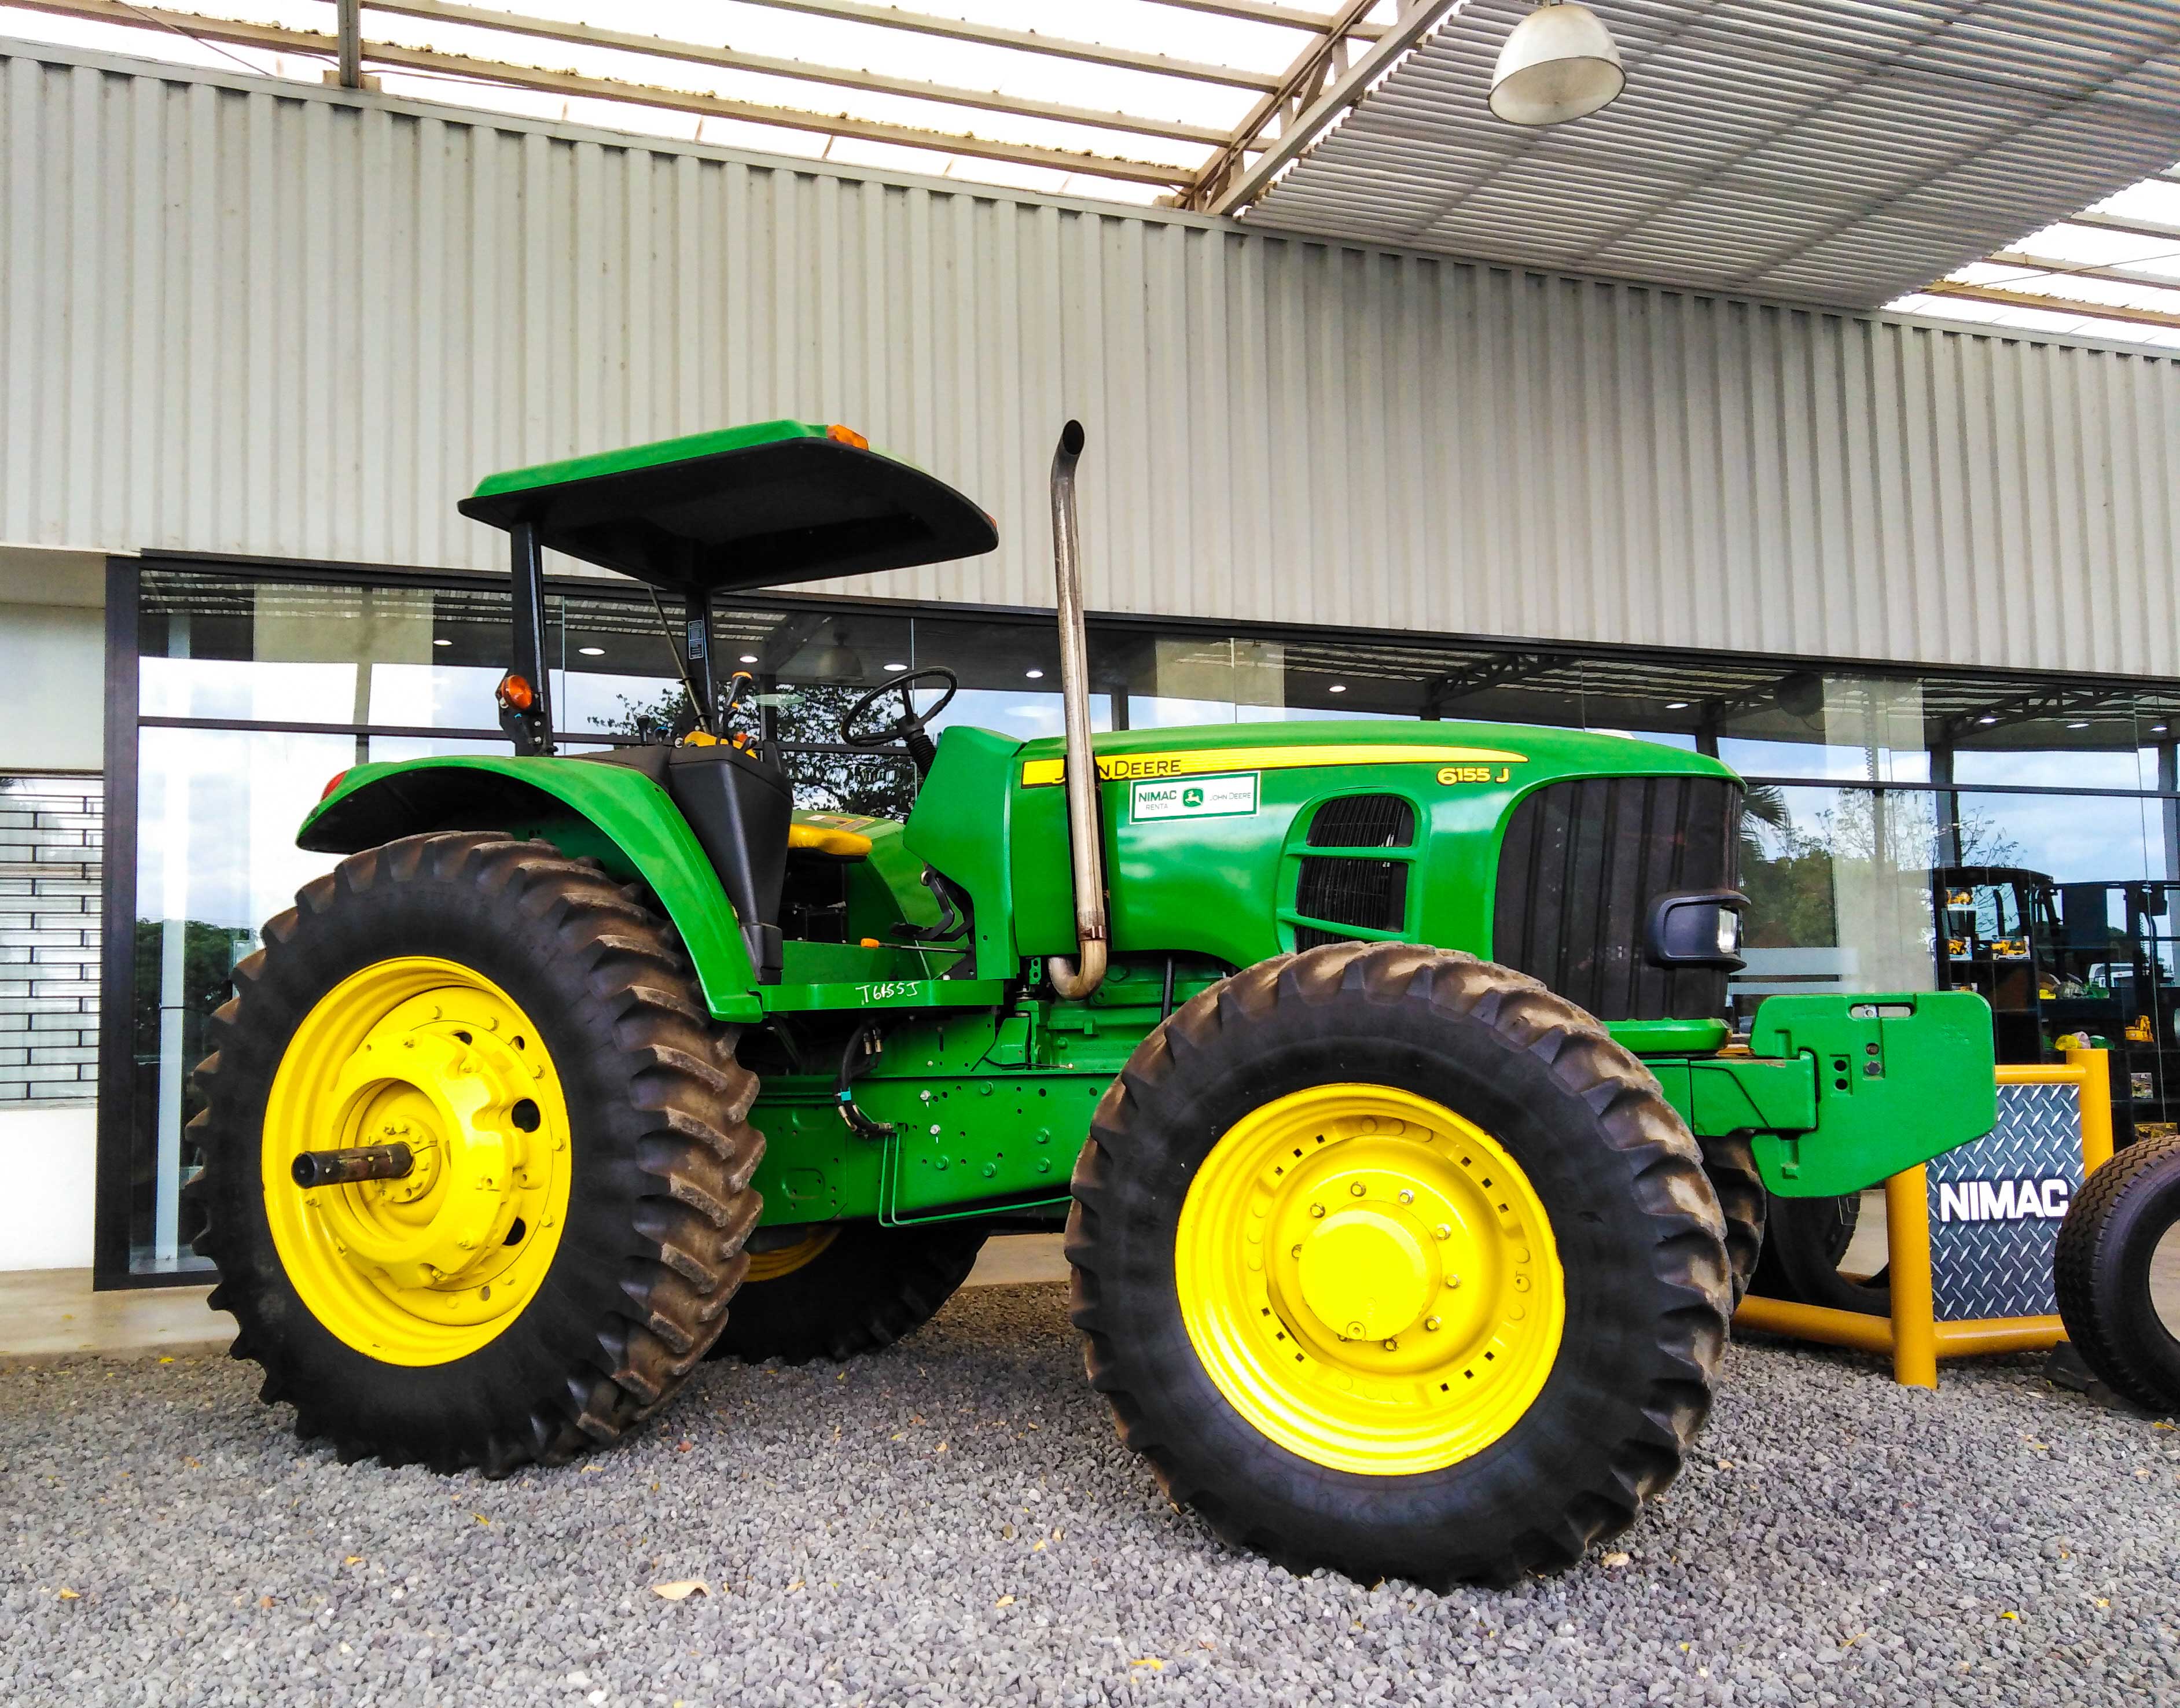 John Deere Tractores Agrícolas a la venta en subasta en línea